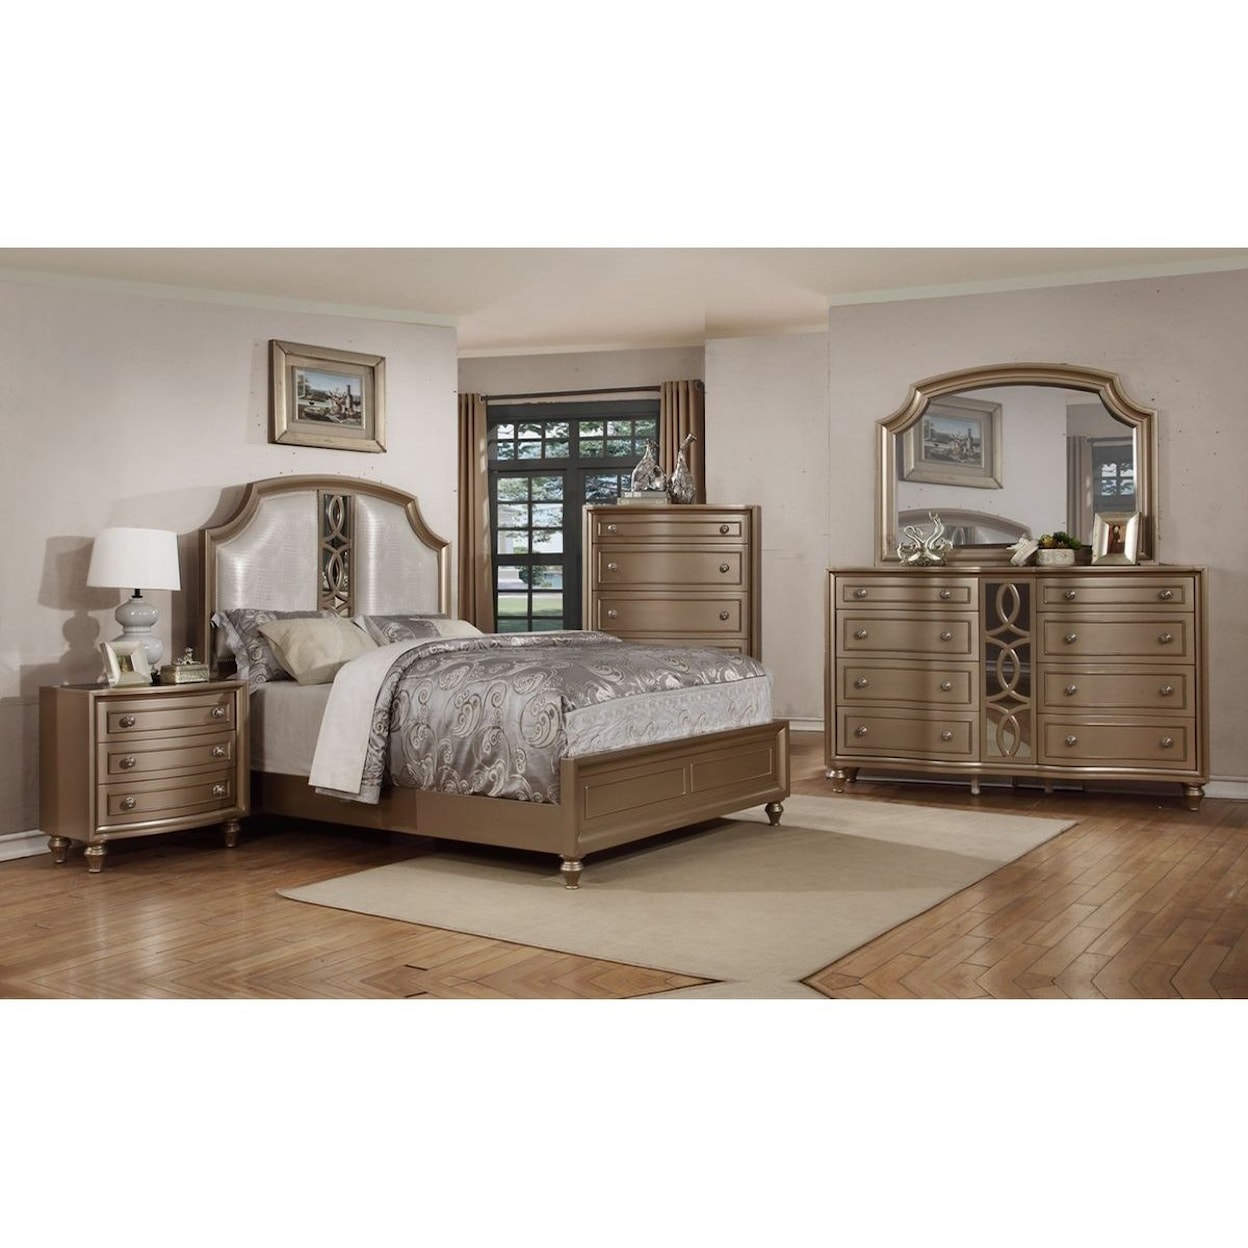 Avalon Furniture Regency Gold King Bedroom Group